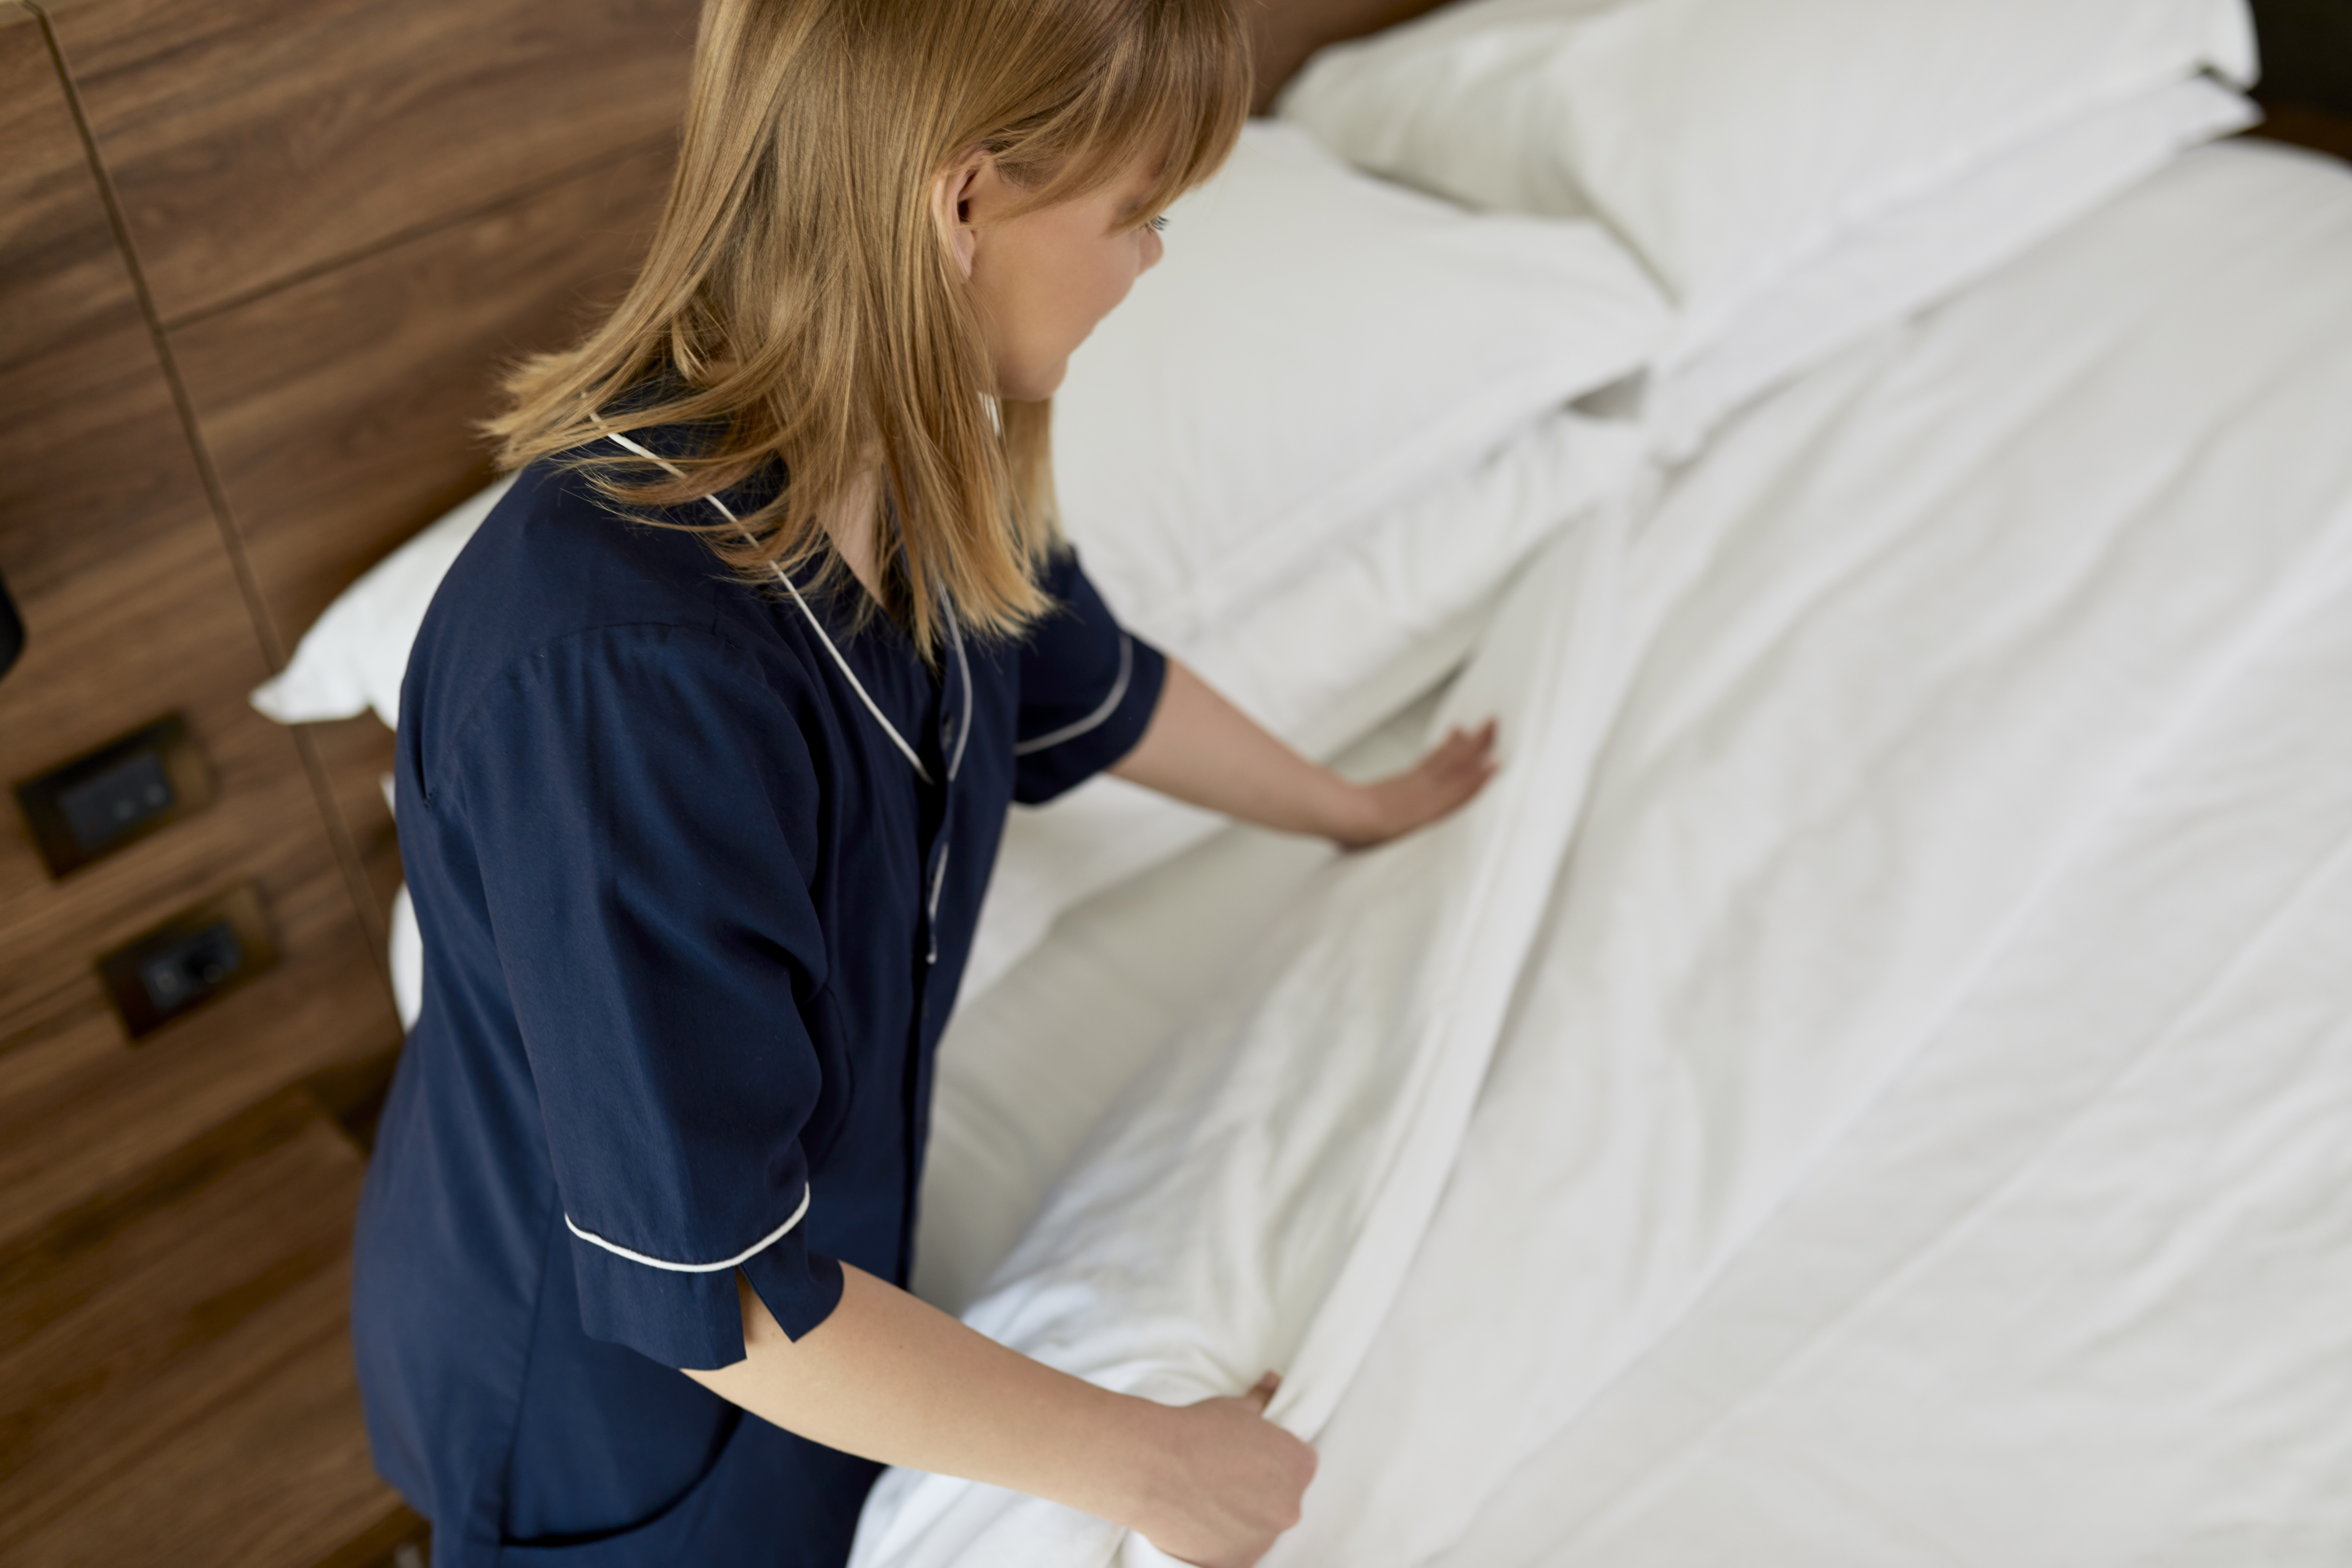 Camarera de hotel hace la cama | Fuente: Getty Images